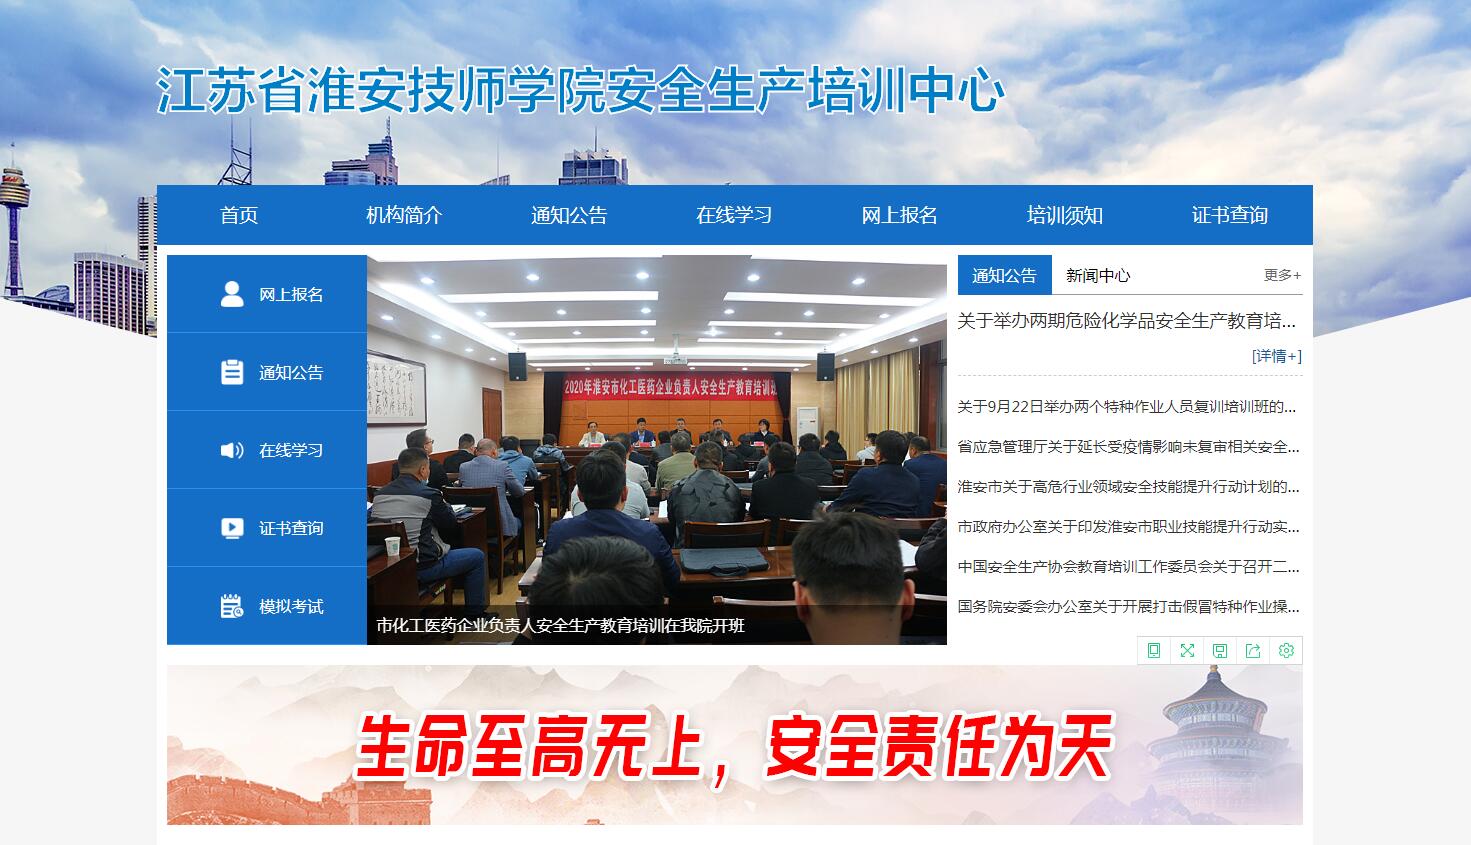 江蘇省淮安技師學院安全生產培訓中心